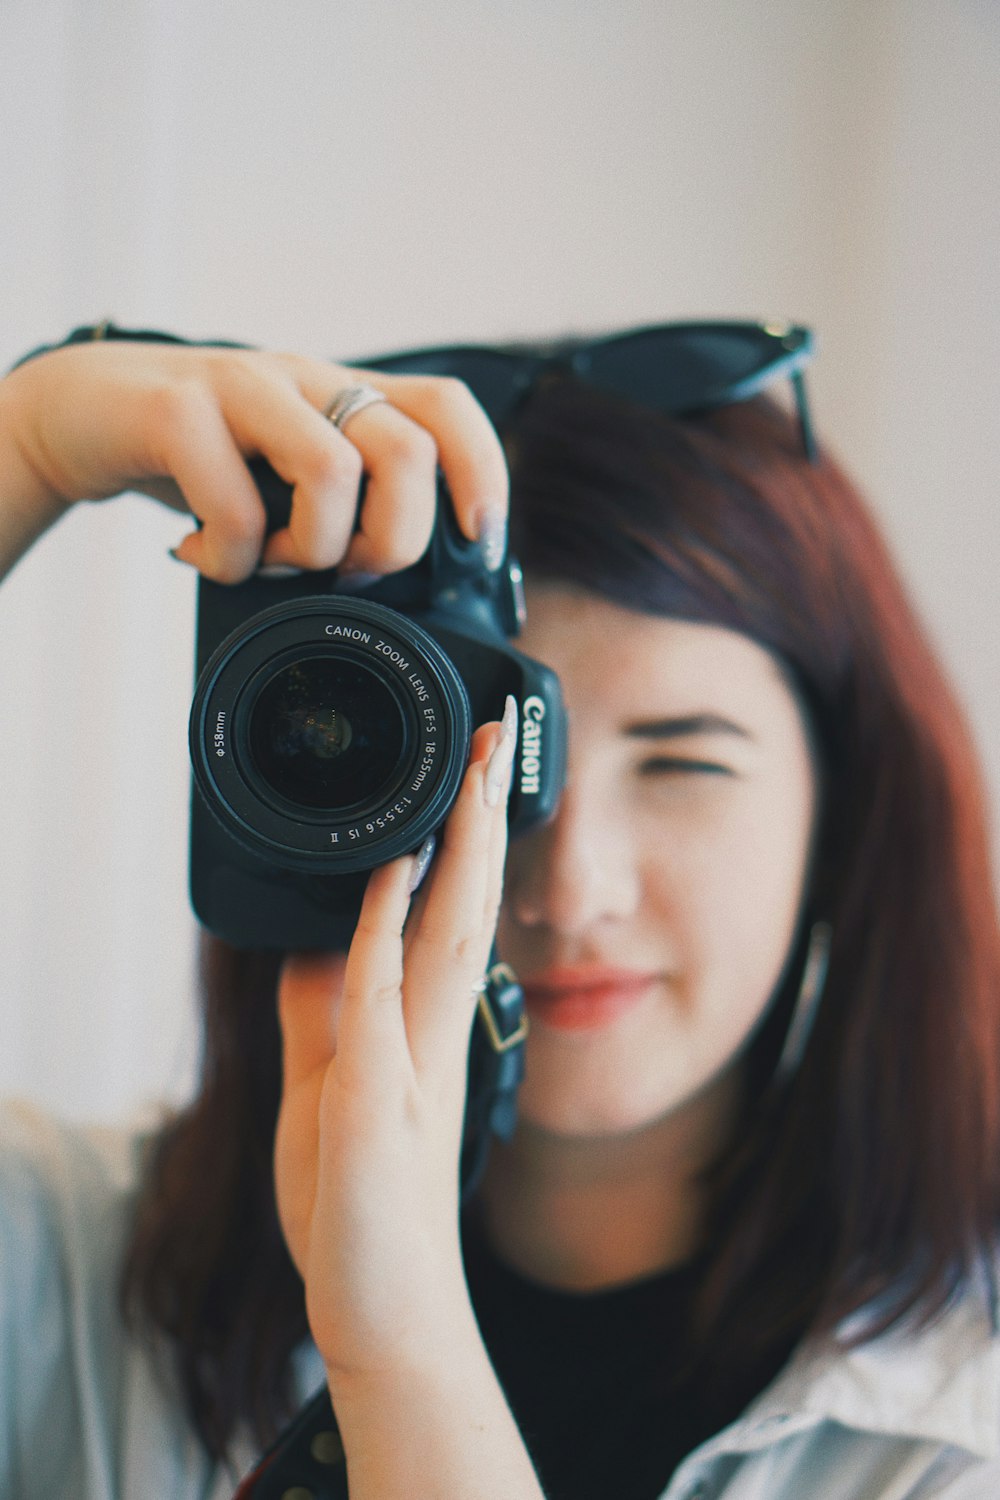 foto a fuoco superficiale di donna che utilizza una fotocamera reflex digitale Canon nera